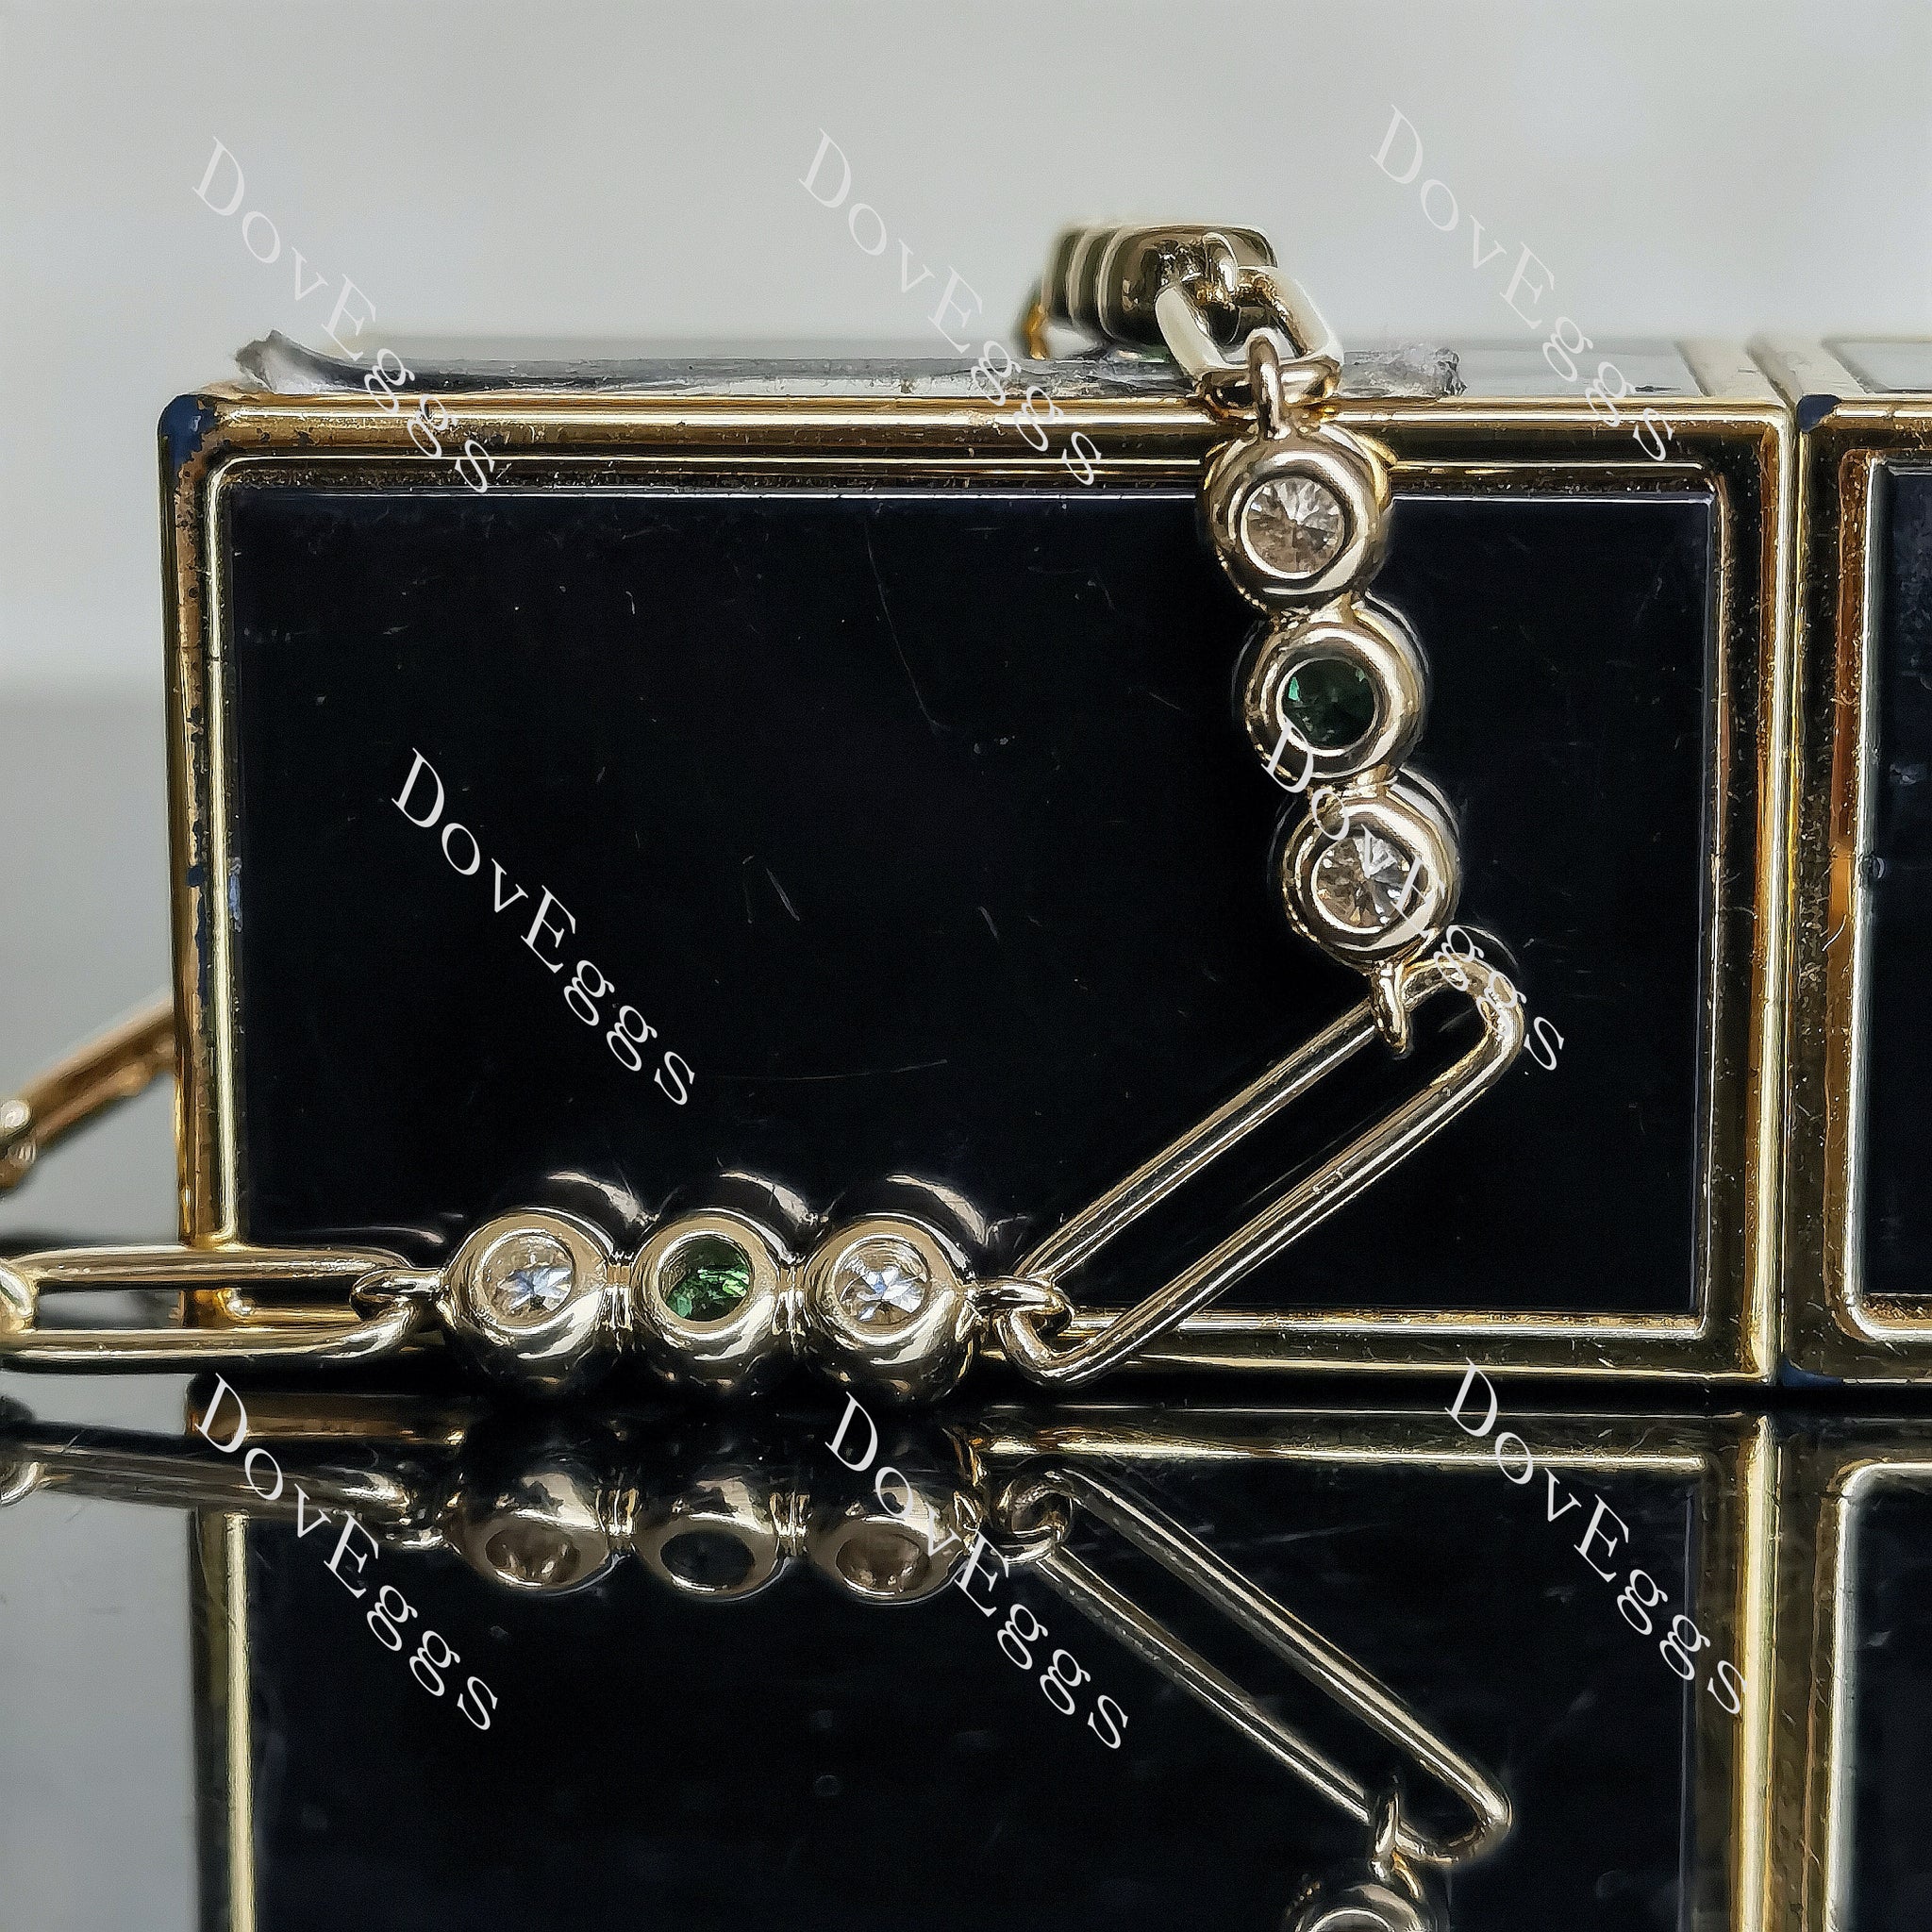 Doveggs round moissanite/colored gem bracelet